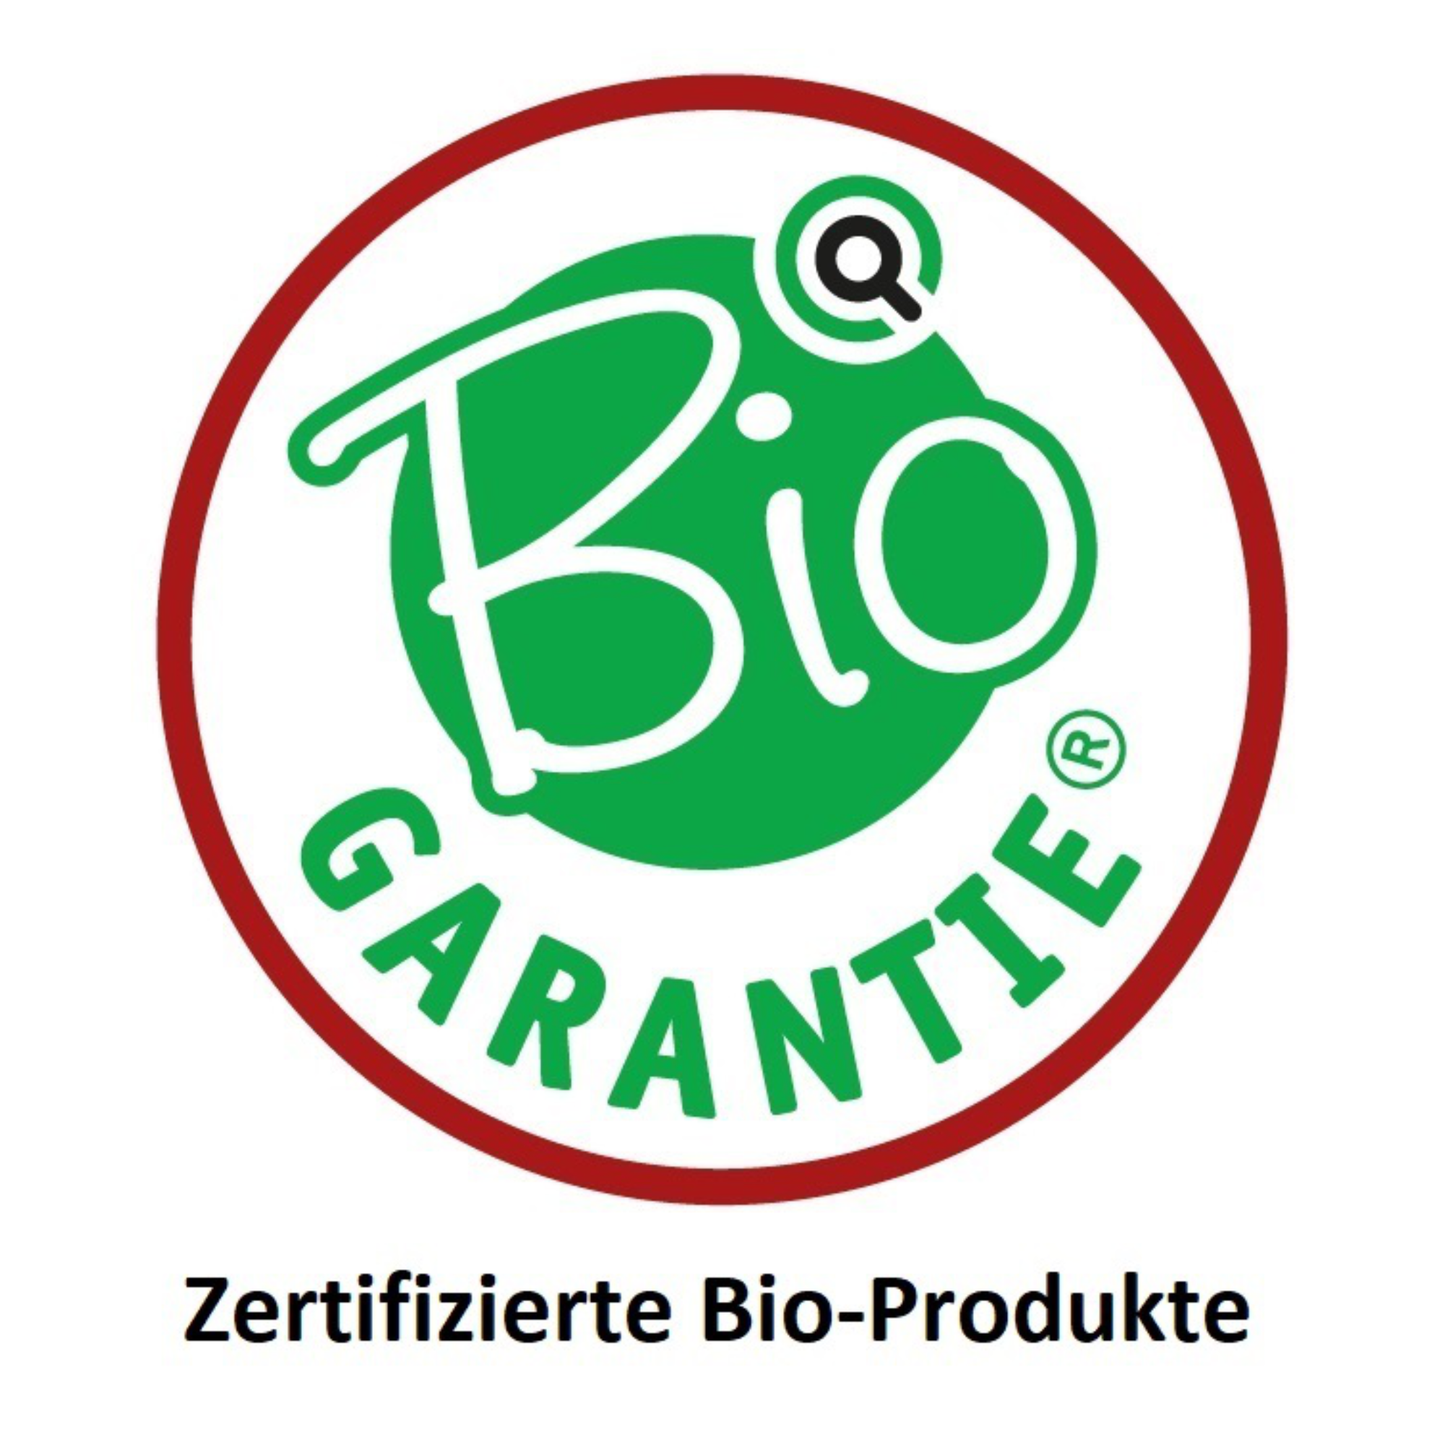 BIO Pilzmix Complete: Flüssig-Extrakt aus 8 Vitalpilzen